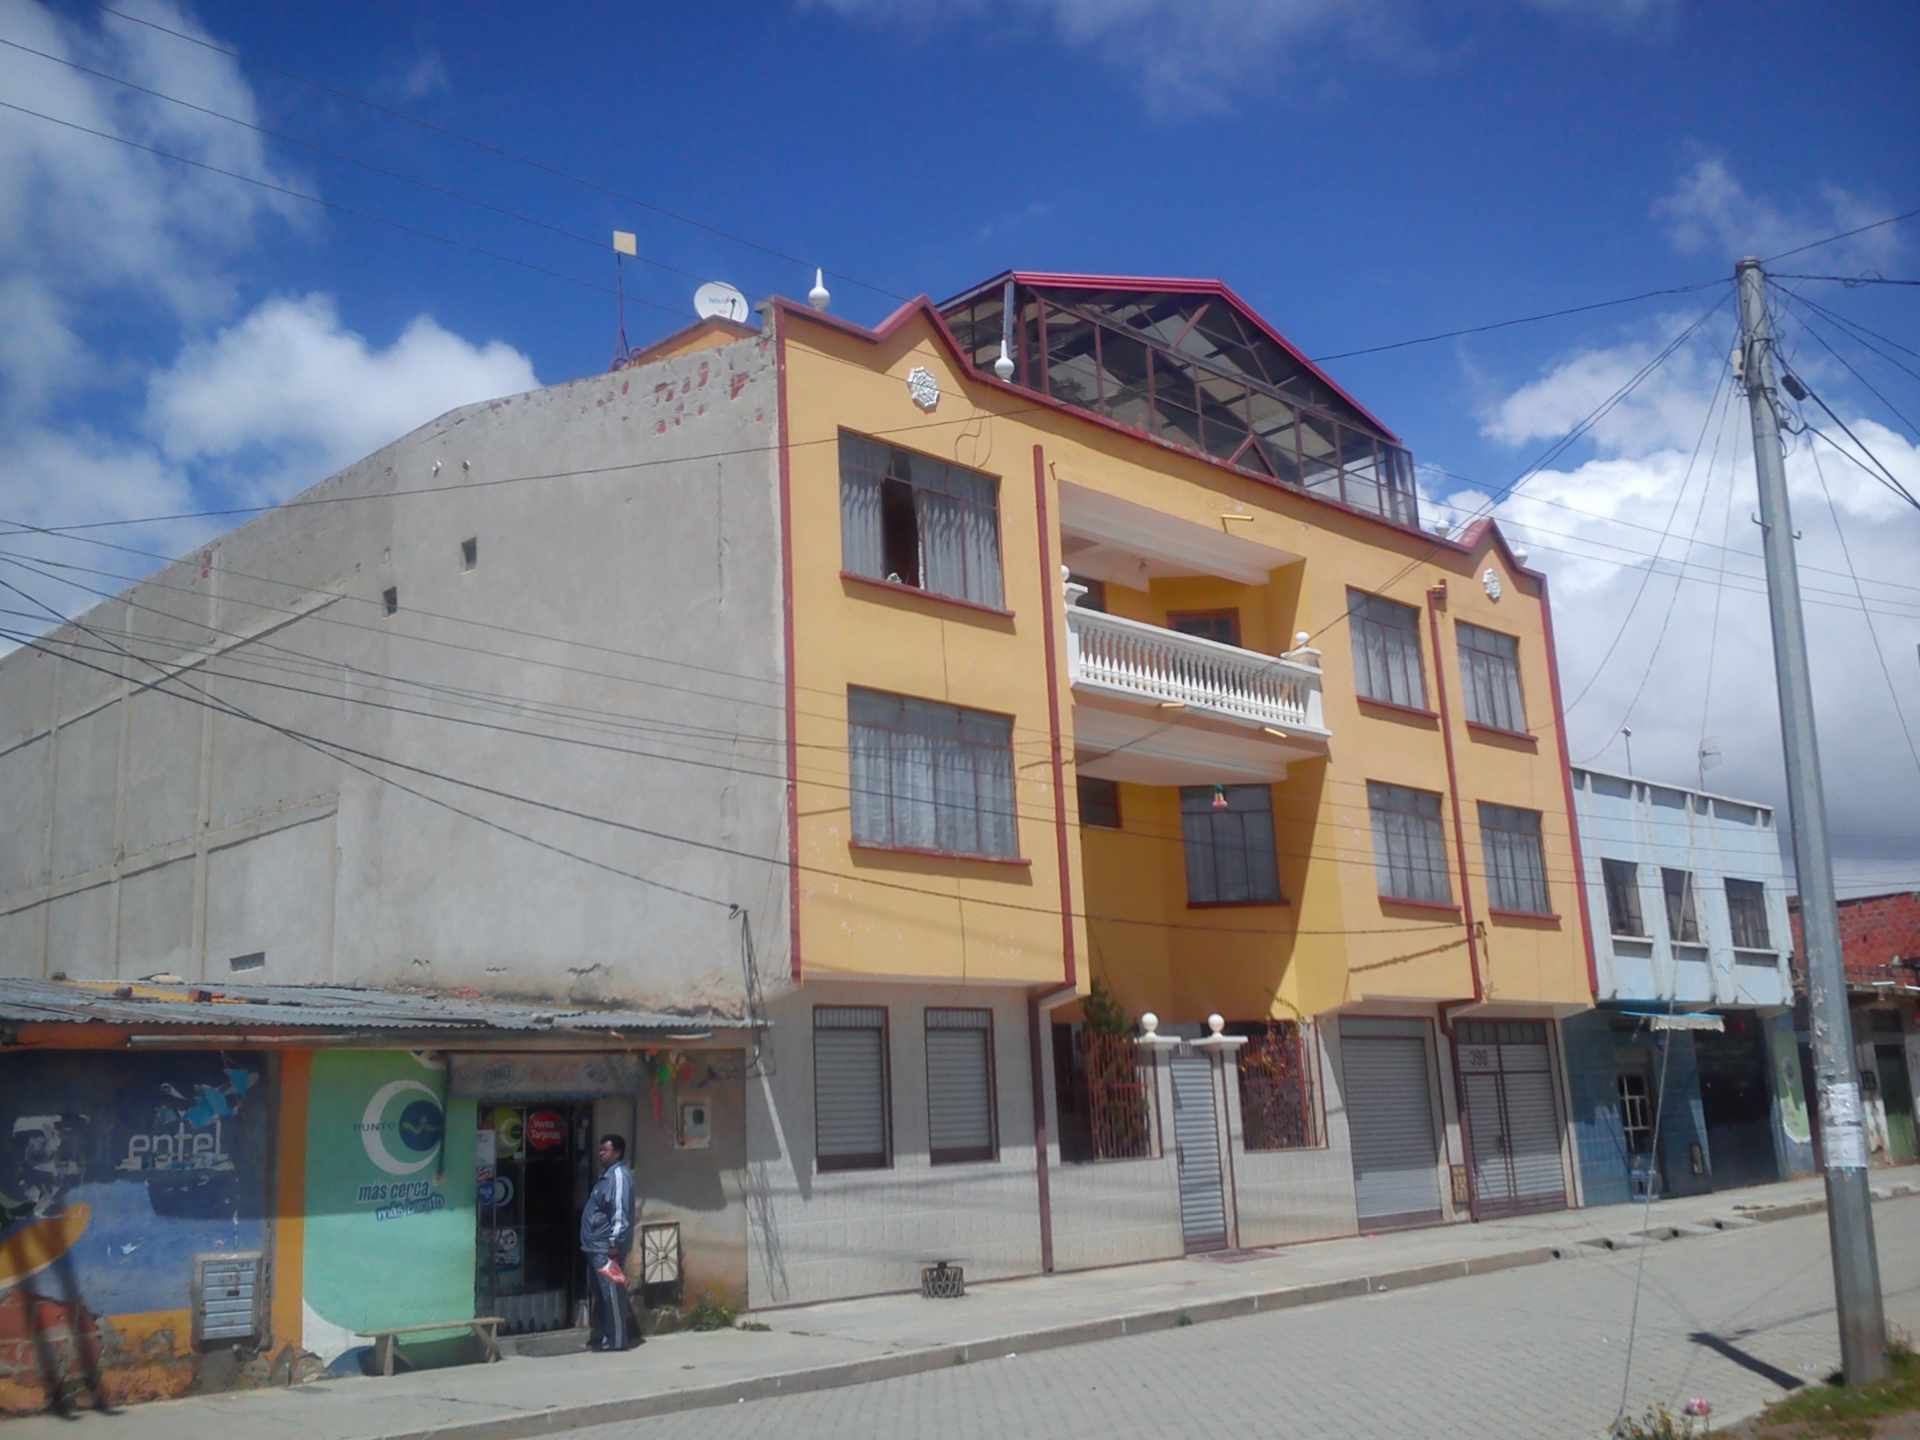 Casa en VentaUrbanización El Kenko, Calle 16, # 398 - 399  DISTRITO 2, Ciudad de EL ALTO. Foto 2